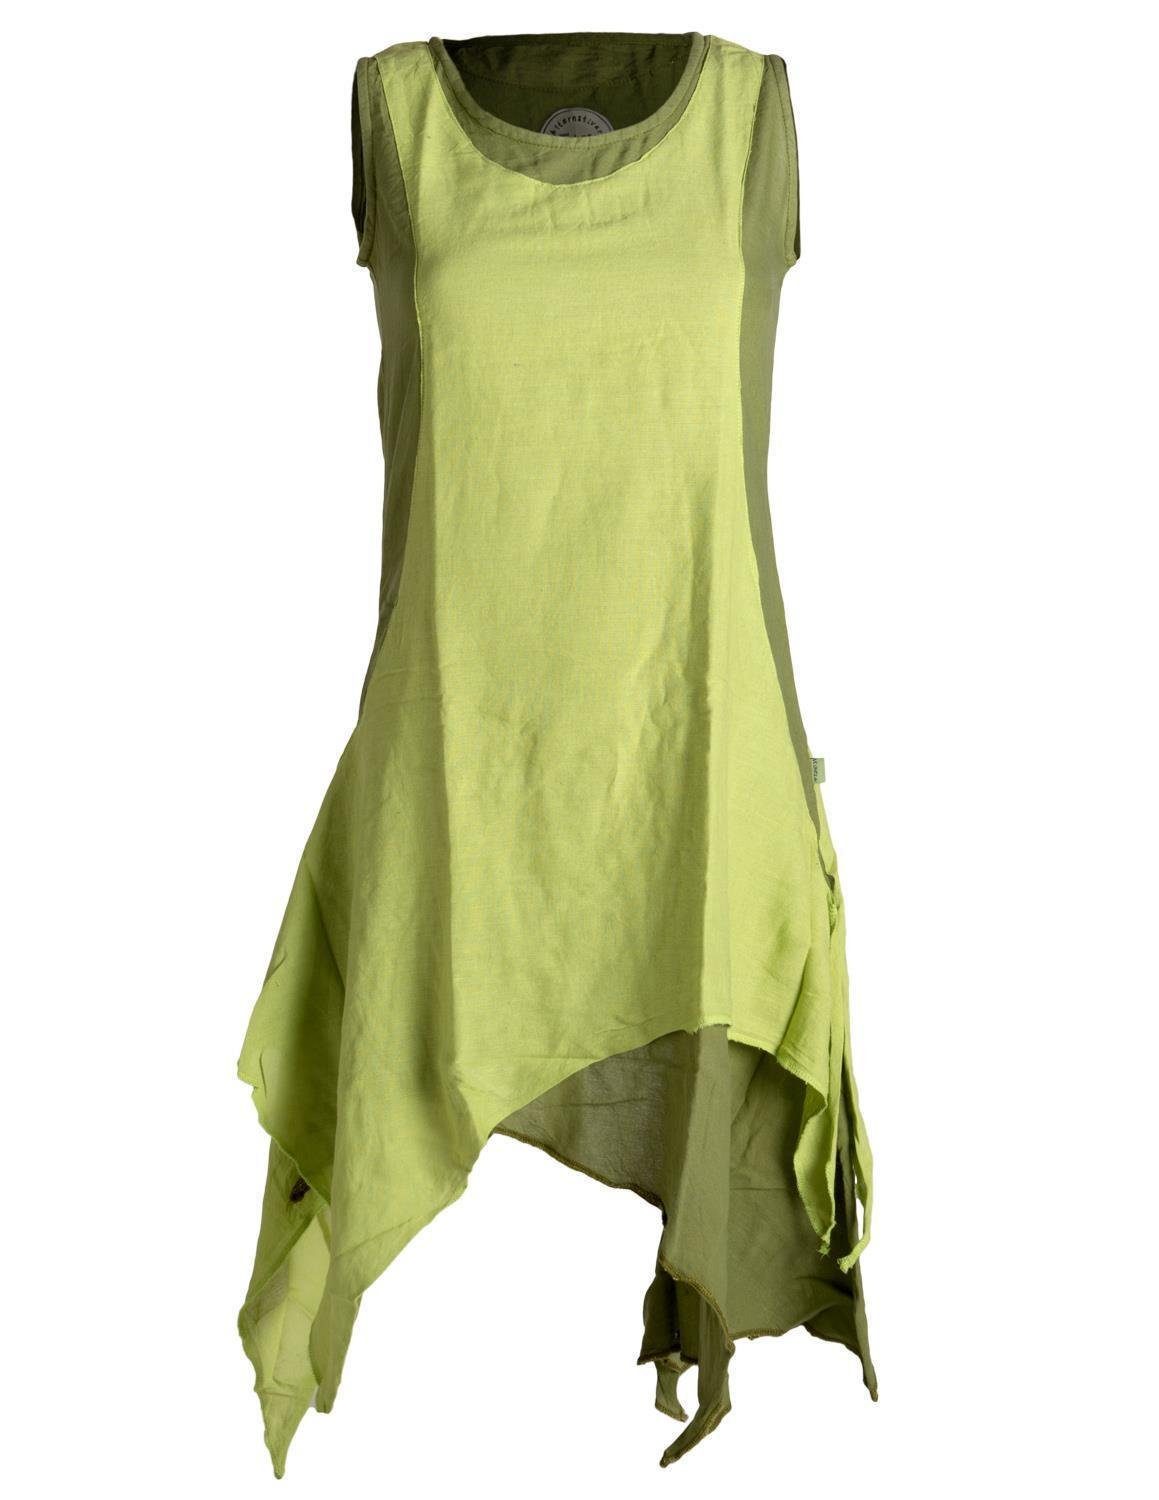 Vishes Sommerkleid Ärmelloses Lagenlook Kleid handgewebte Baumwolle Goa, Boho, Hippie Style olive-hellgrün